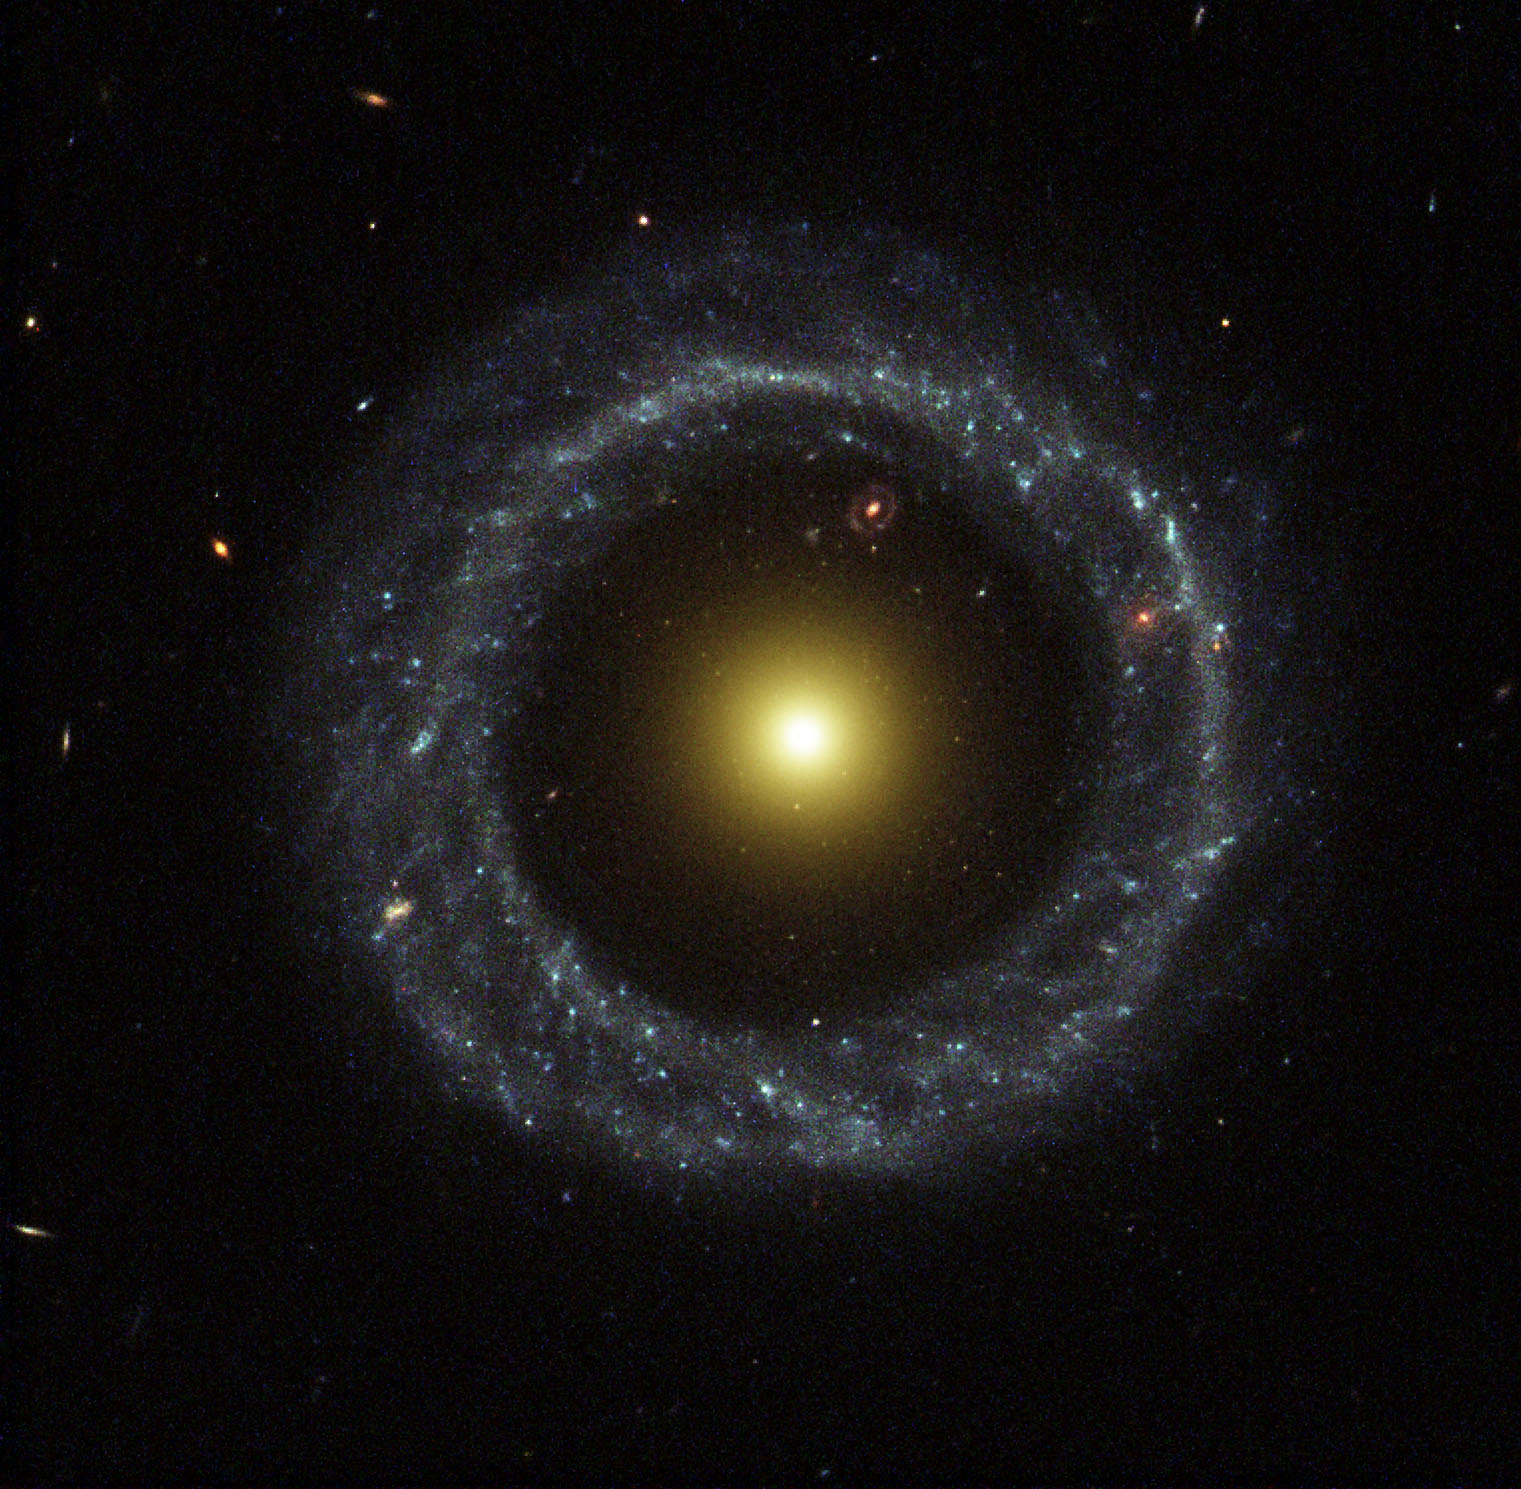 Объект Хоага: странная кольцеобразная галактика